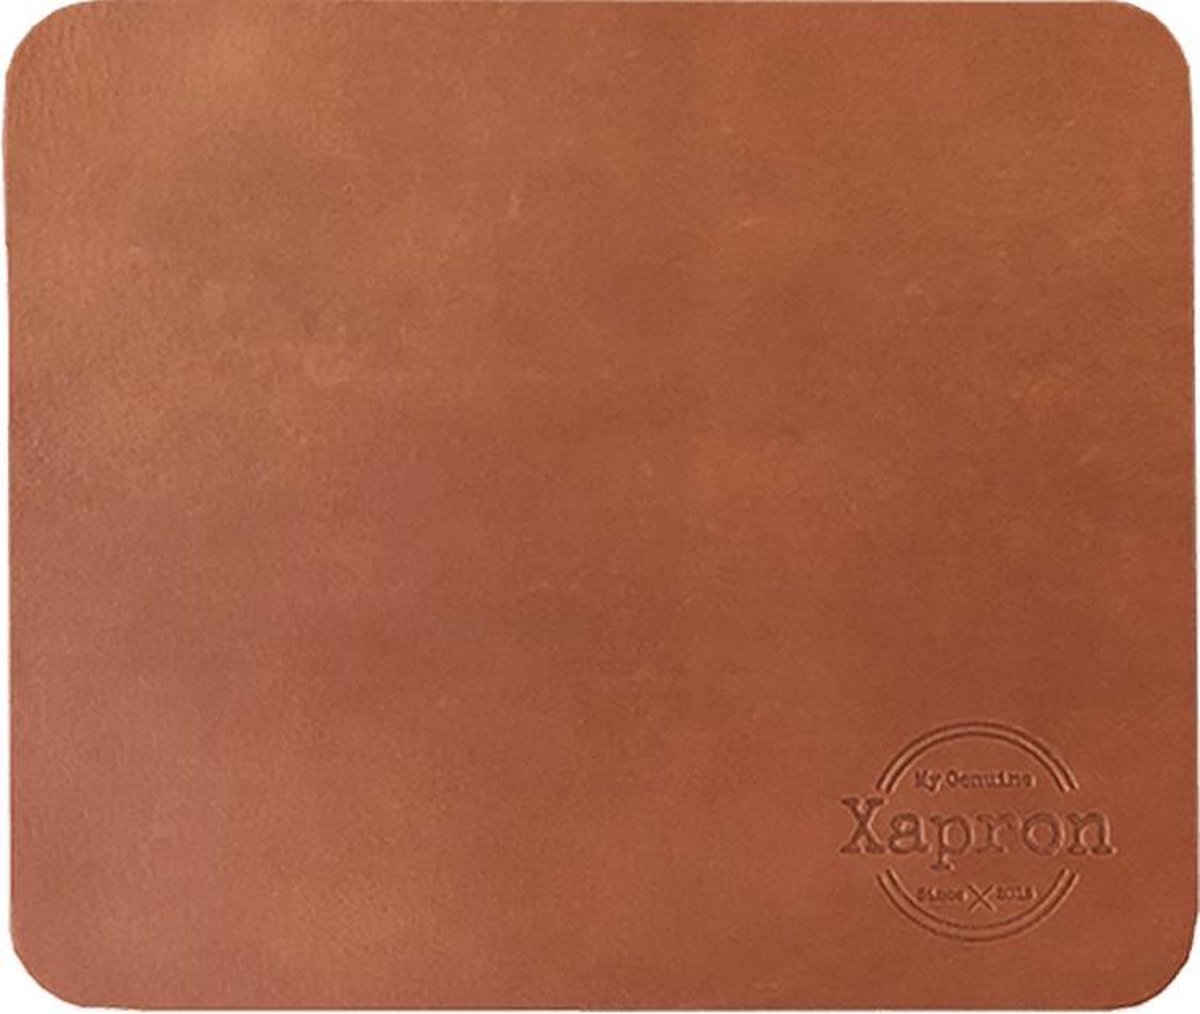 Xapron leren muismat - Kleur Cognac (lichtbruin) - 26 x 22 cm - Handgemaakt - Kantoor - Gaming